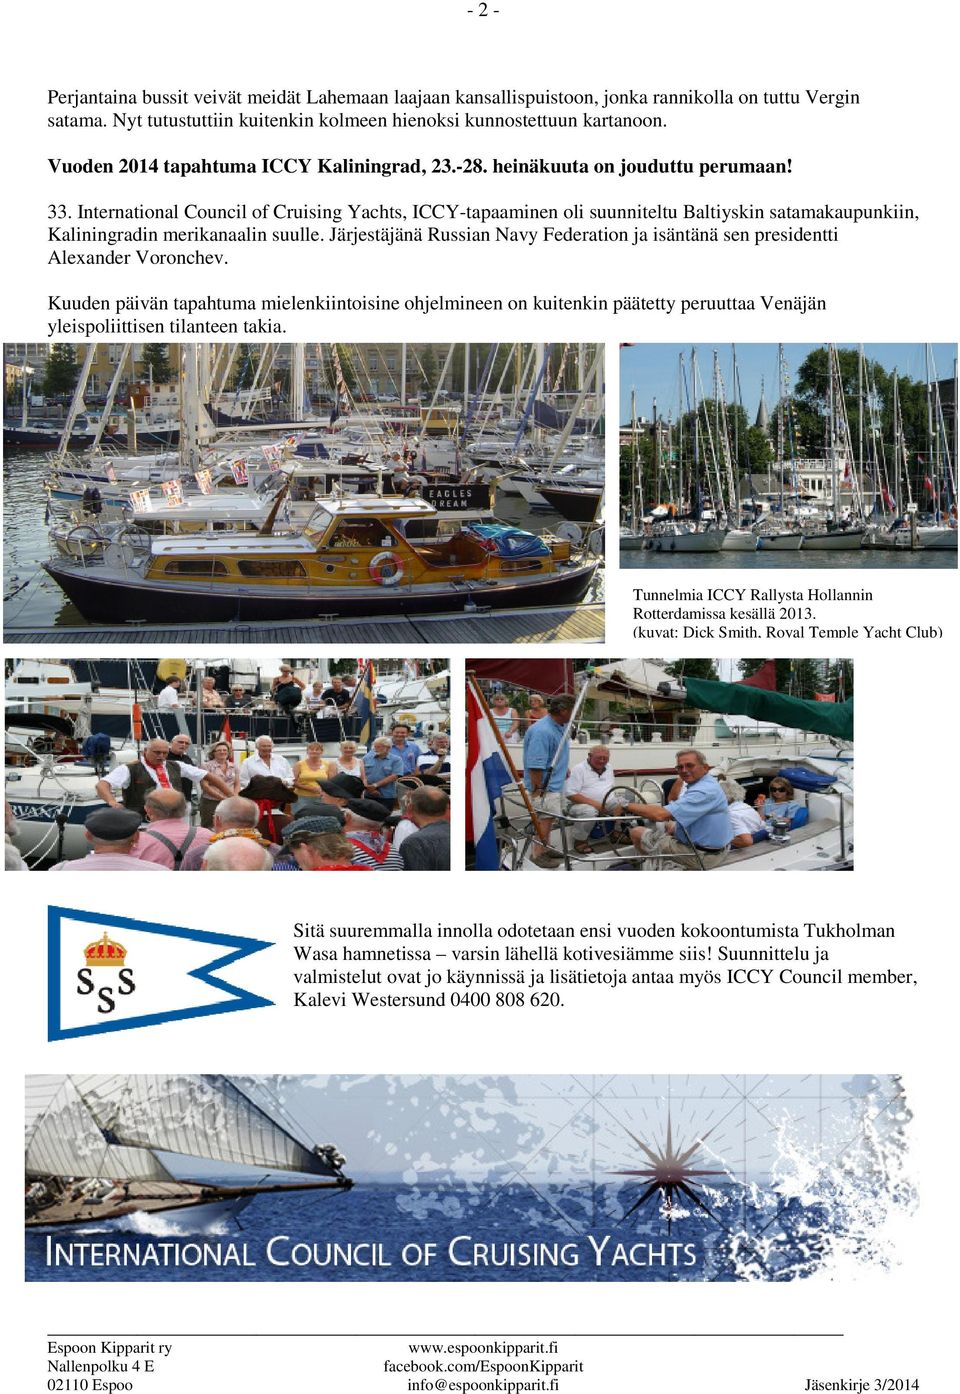 International Council of Cruising Yachts, ICCY-tapaaminen oli suunniteltu Baltiyskin satamakaupunkiin, Kaliningradin merikanaalin suulle.